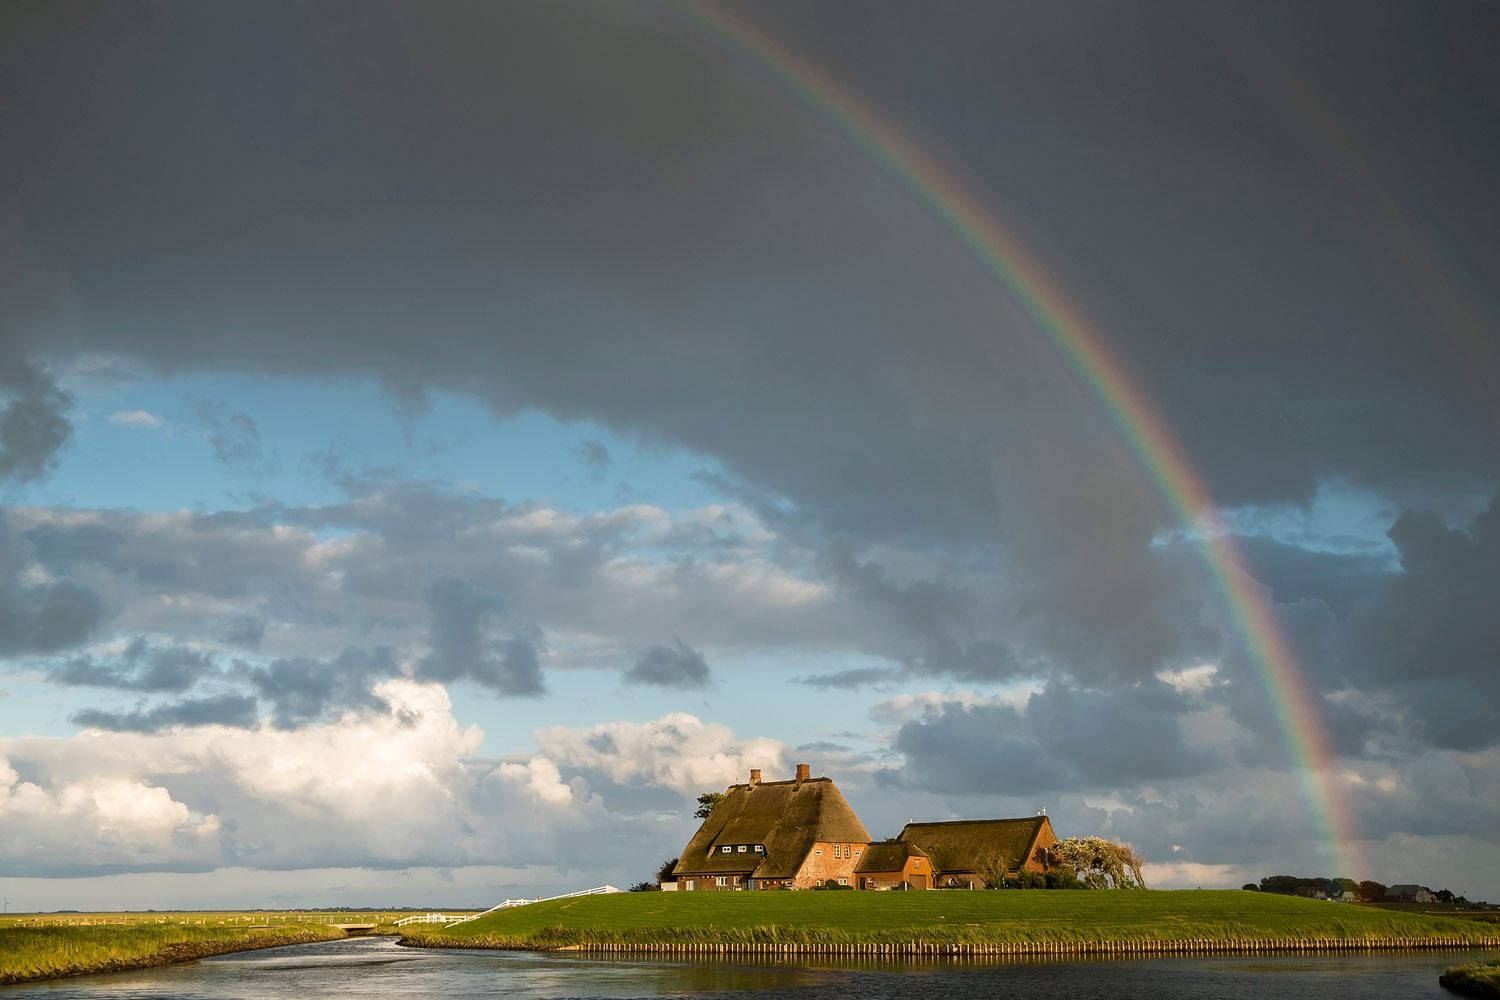 Haus auf einem Hügel, von Wasser umgeben - unter einem Regenbogen.